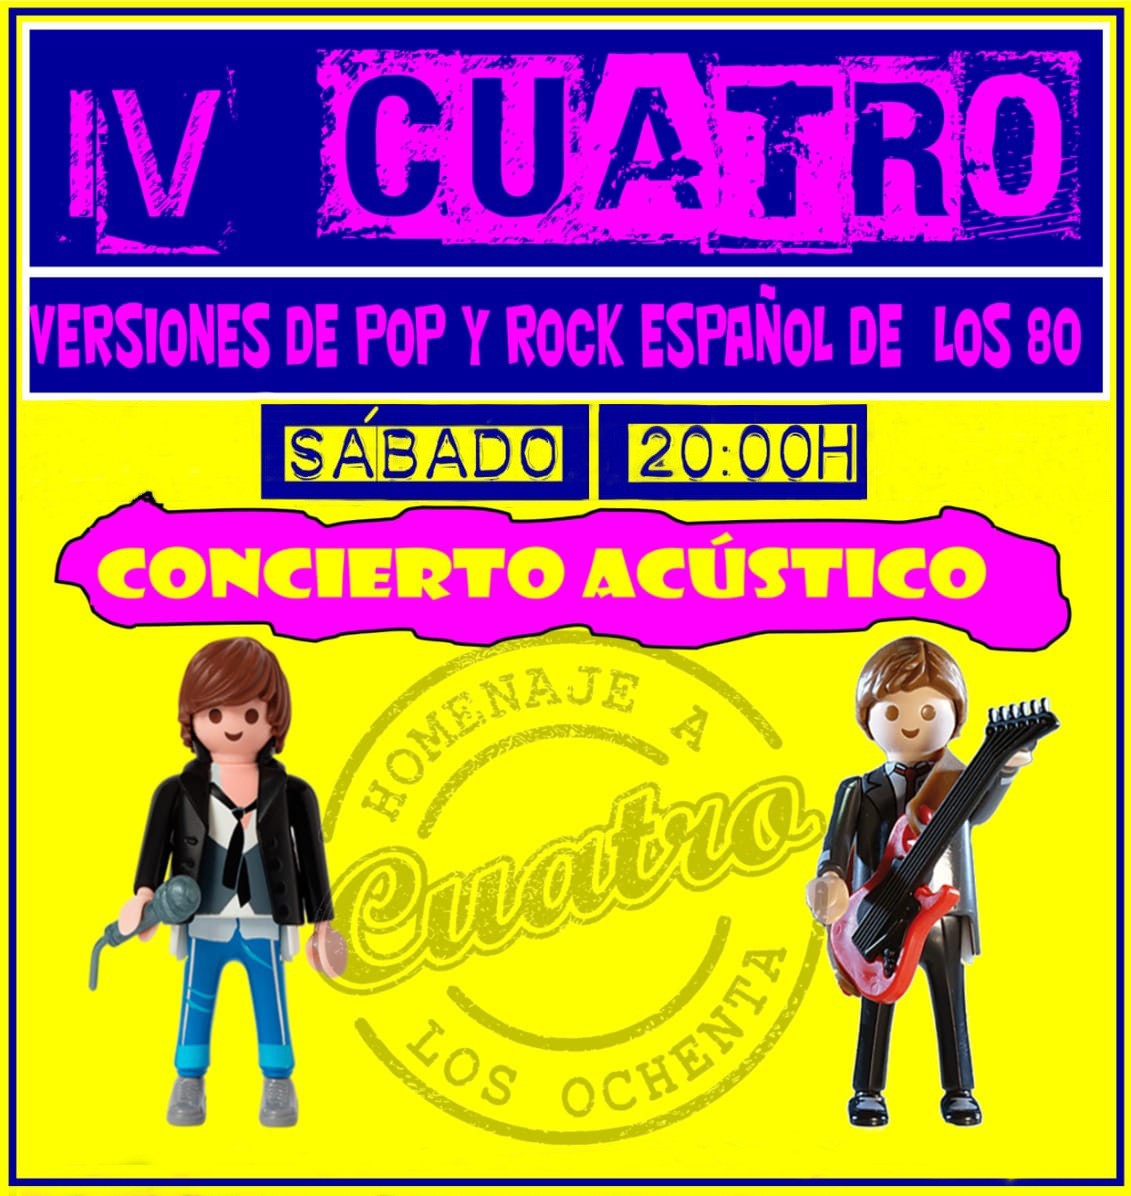 Concierto acústico de Pop-Rock español de los 80 con IV CUATRO